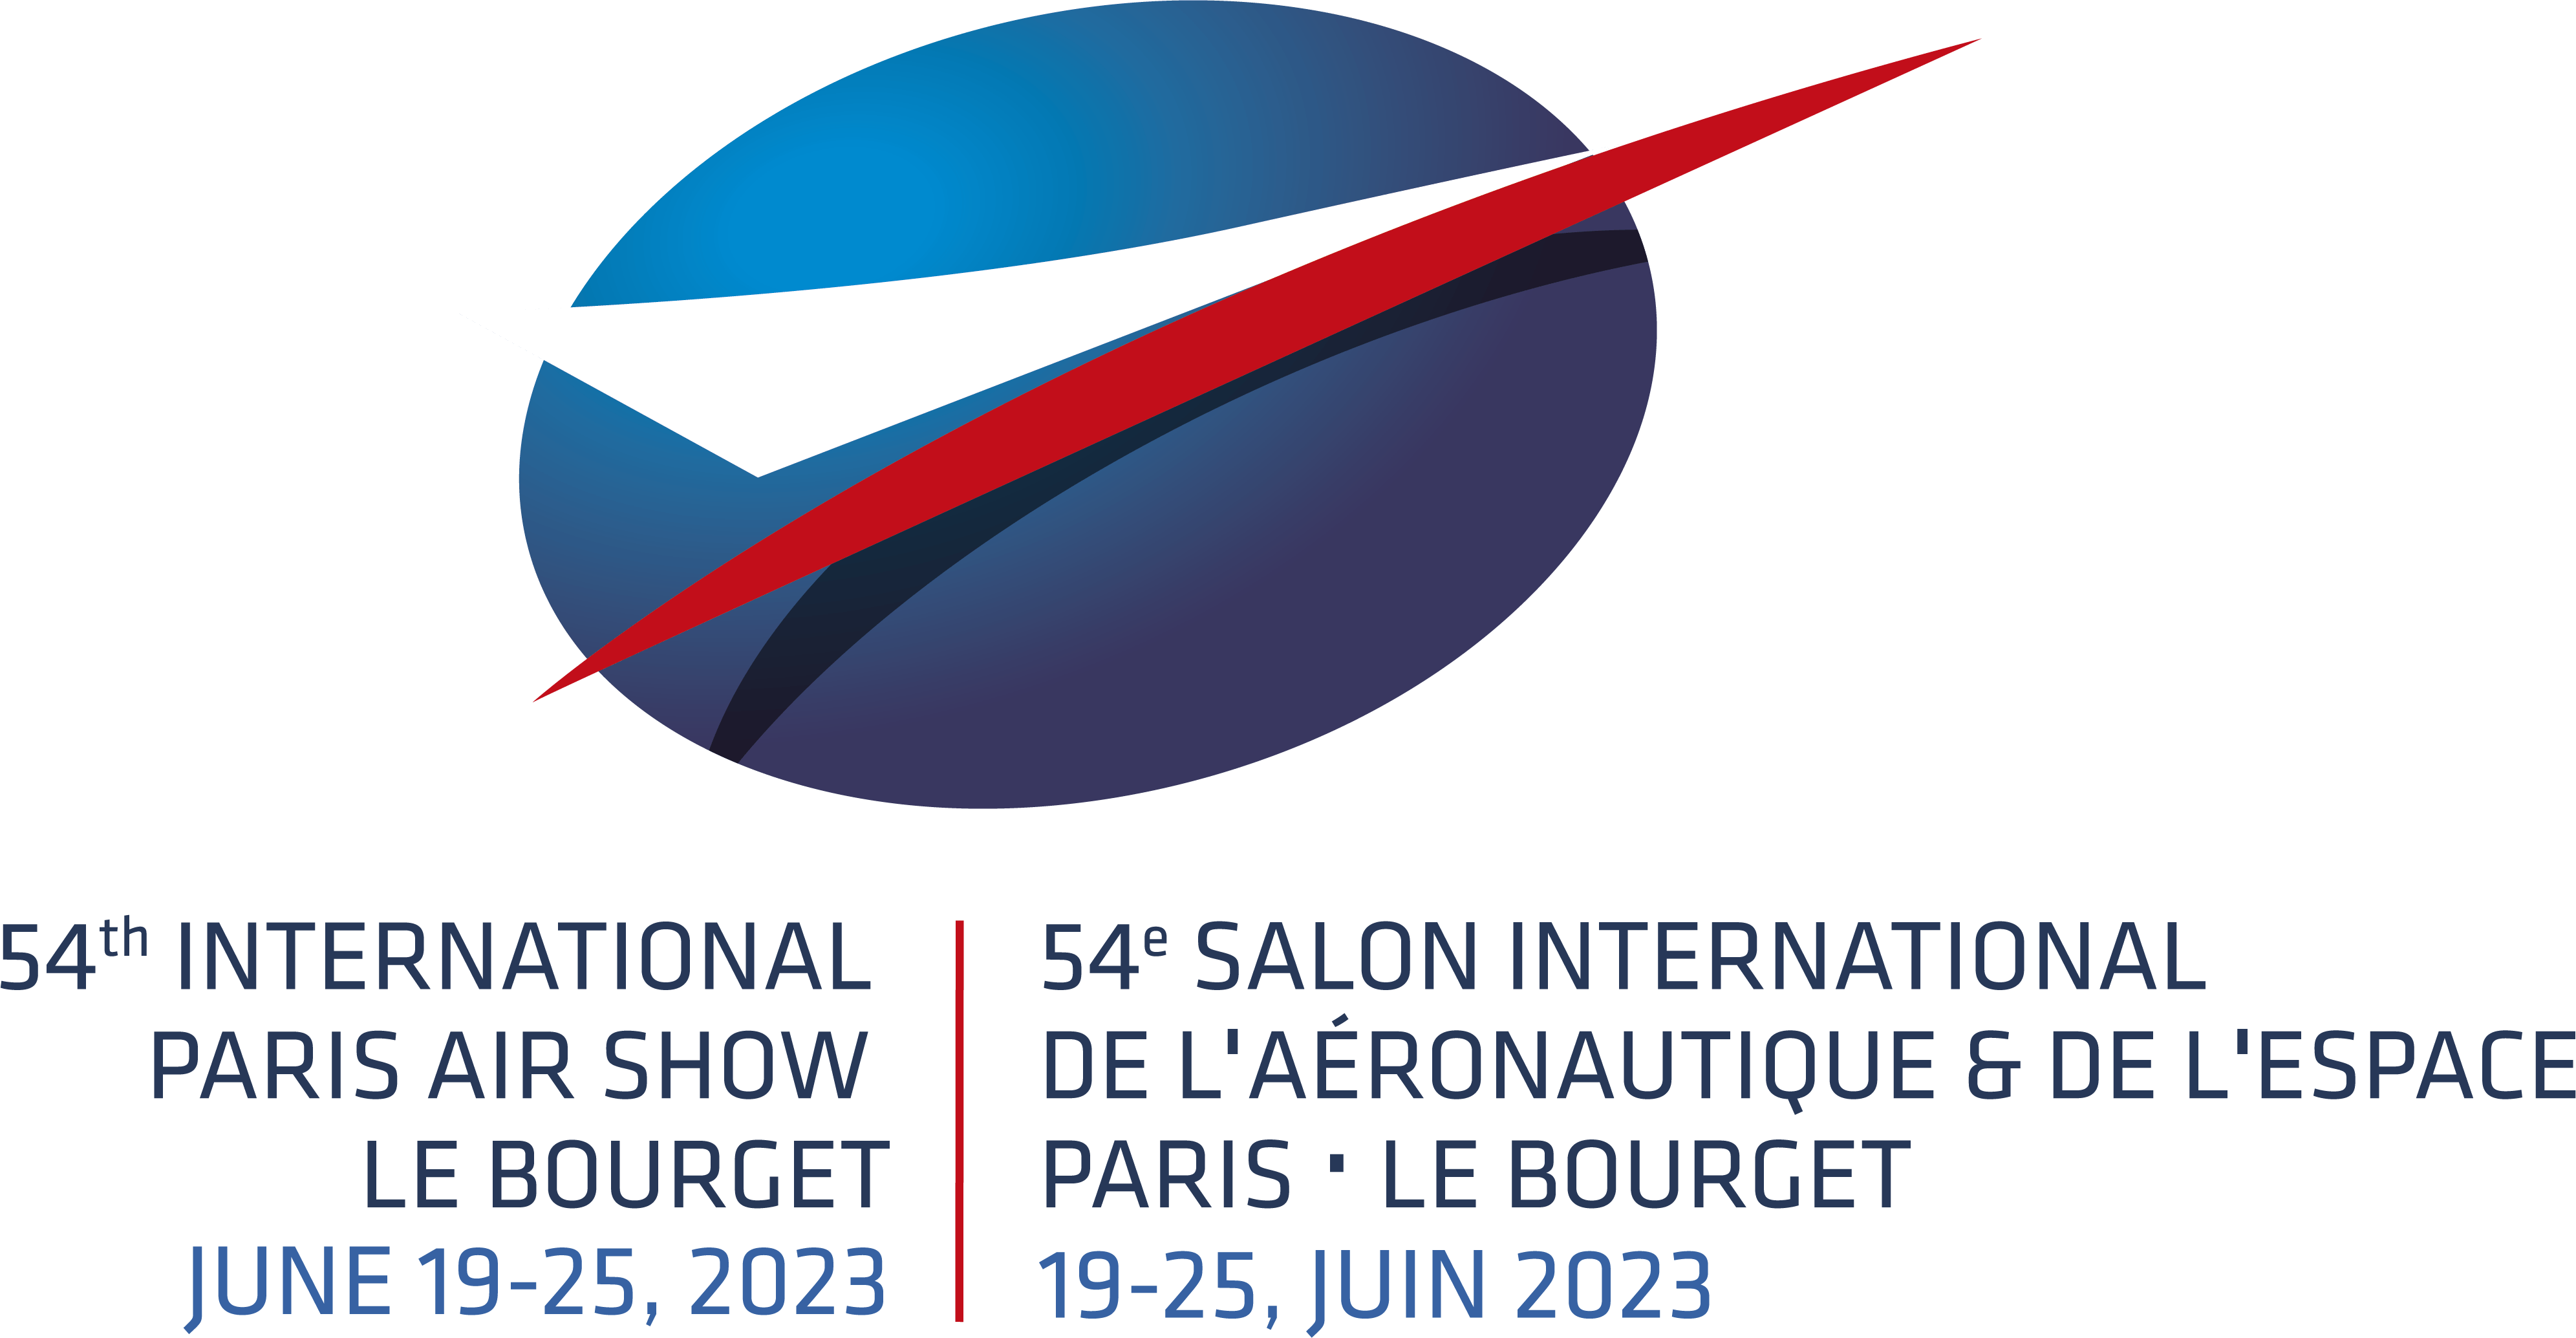 Salon international de l'aéronautique et de l'espace